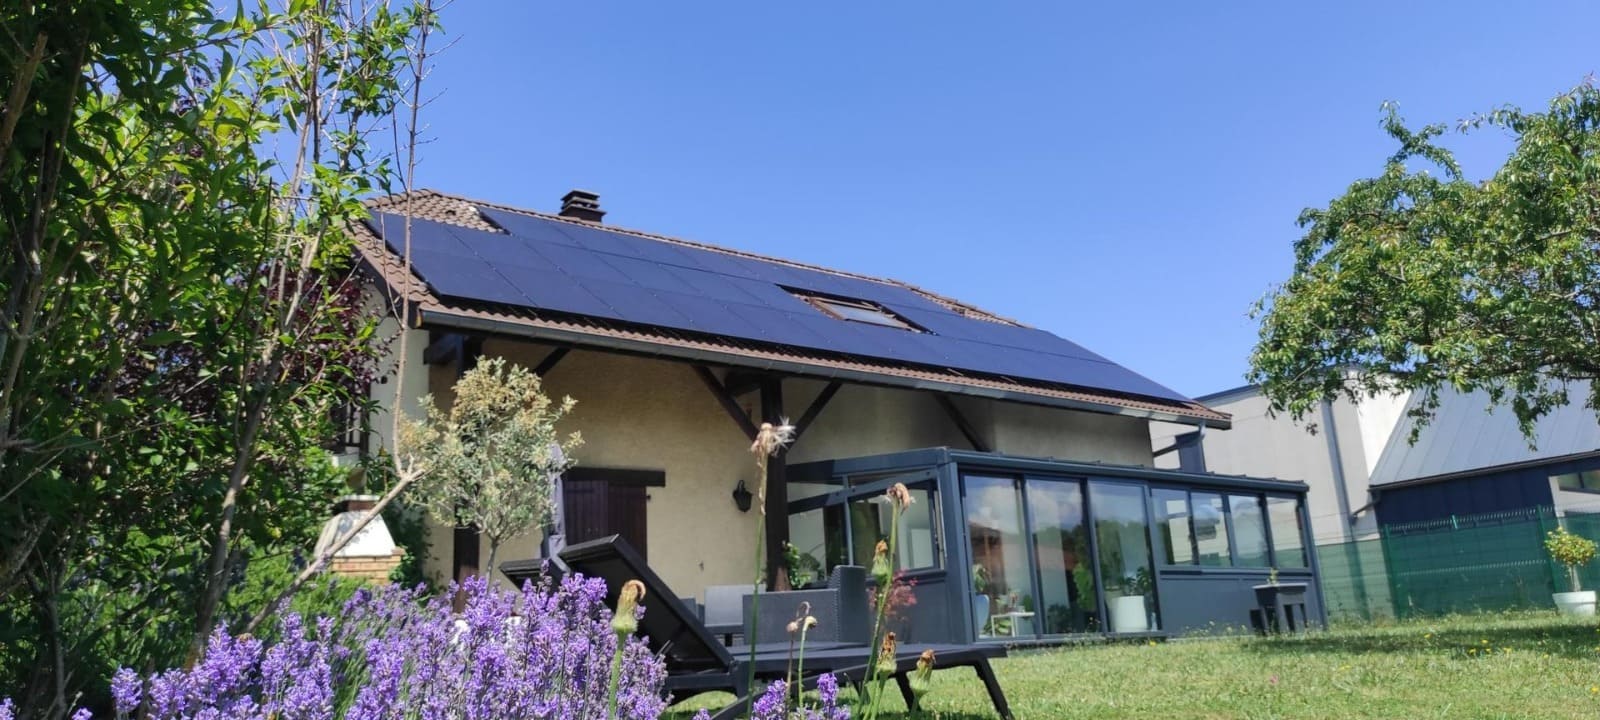 Maison véranda et panneaux solaires et photovoltaïques